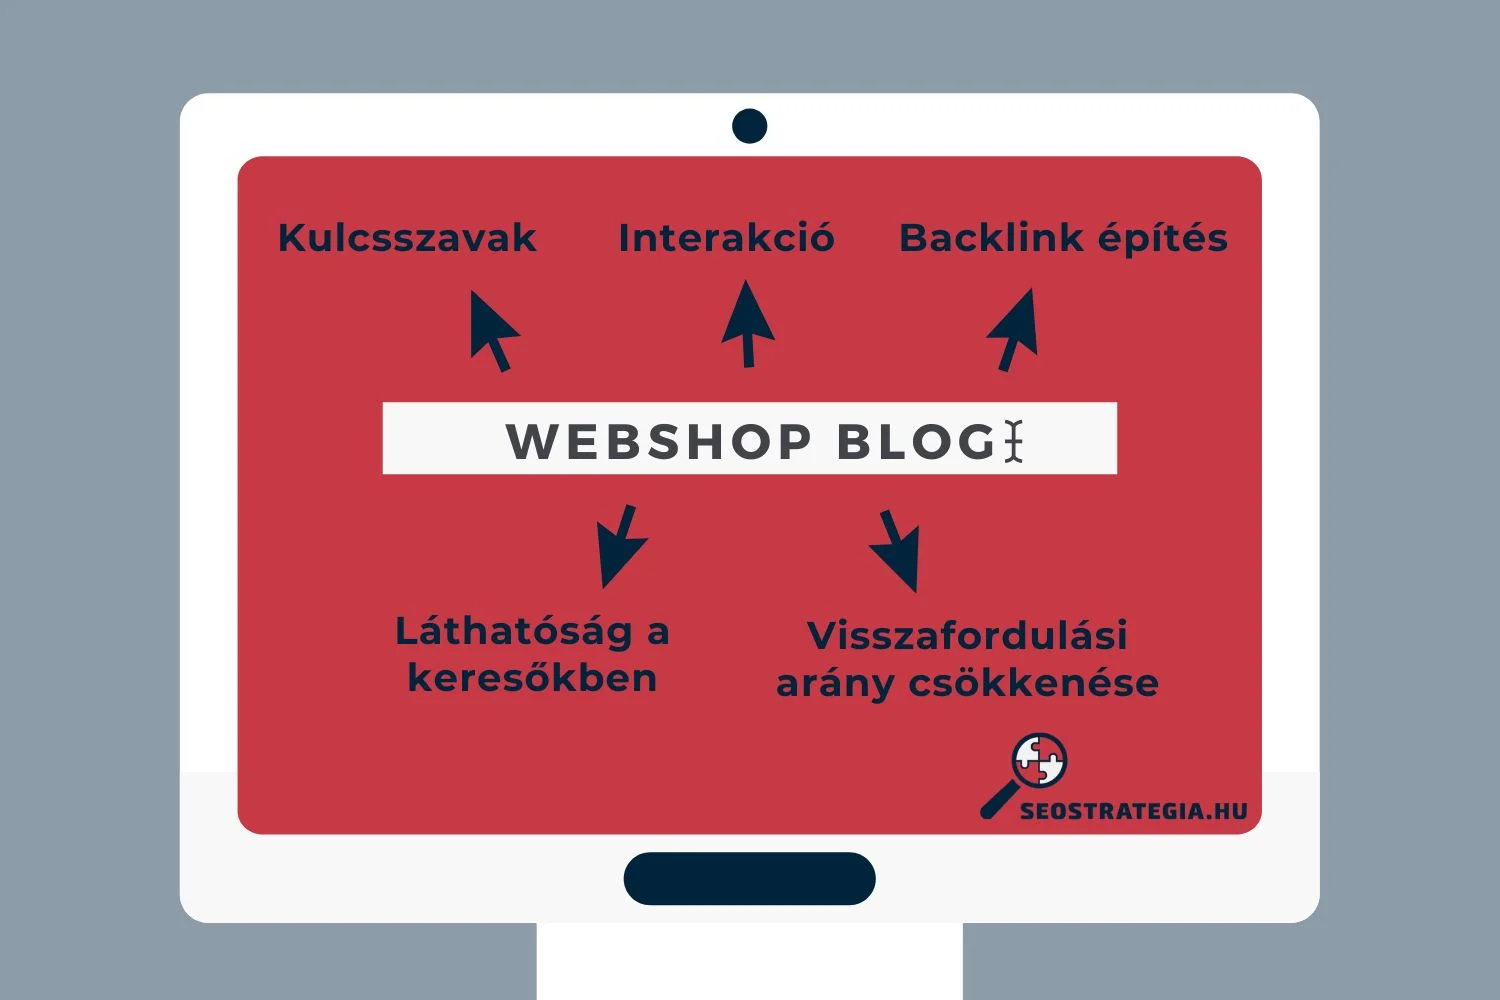 Webshop blogolás előnyei ábrán szemléltetve